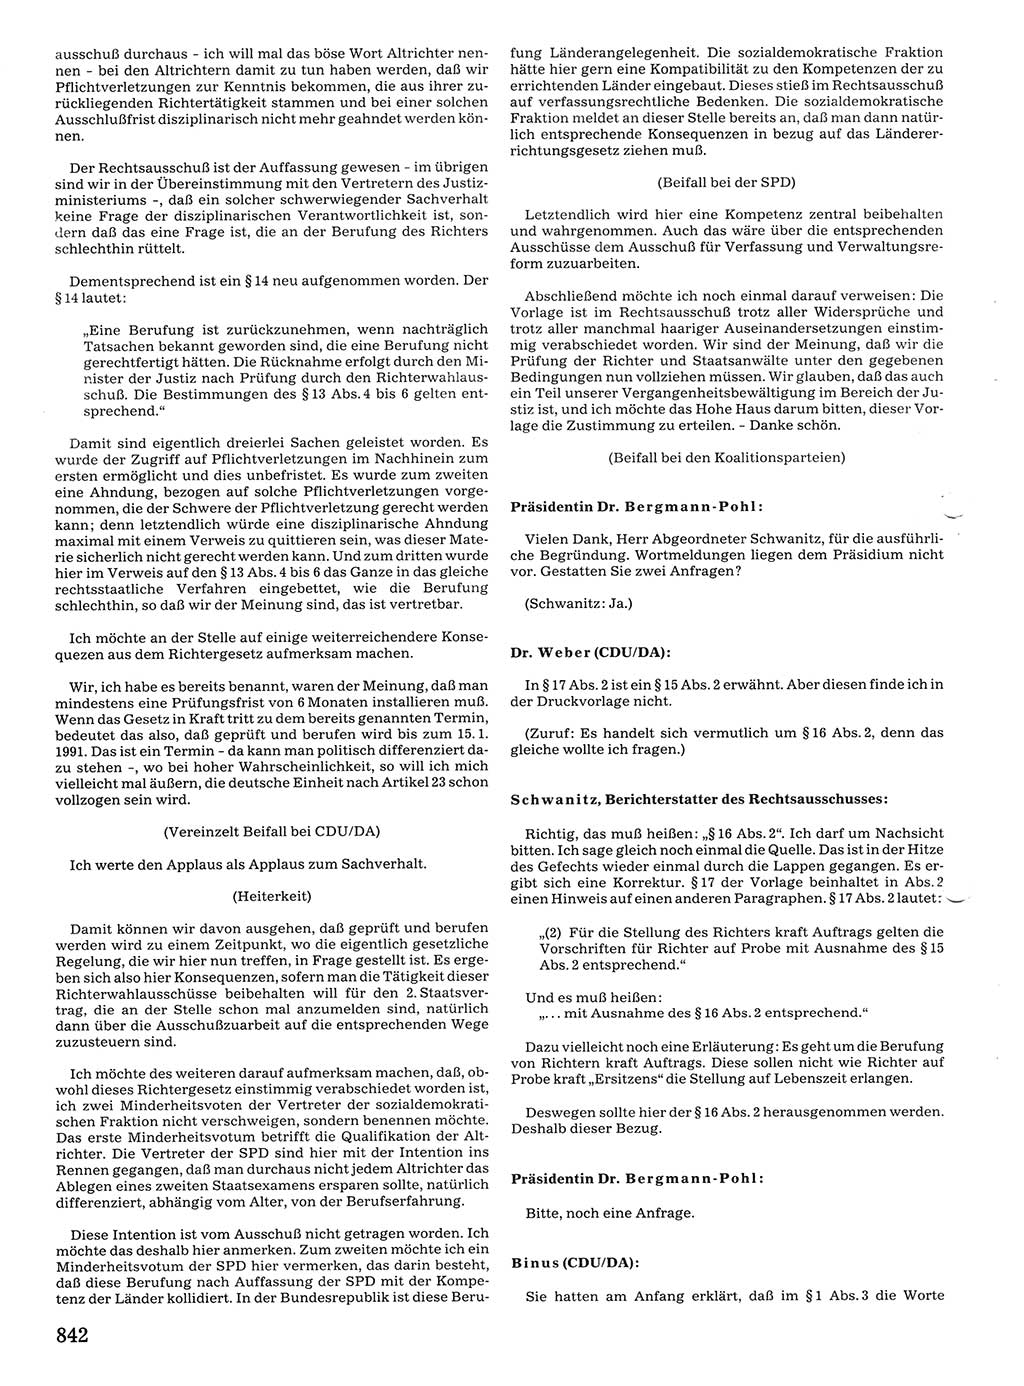 Tagungen der Volkskammer (VK) der Deutschen Demokratischen Republik (DDR), 10. Wahlperiode 1990, Seite 842 (VK. DDR 10. WP. 1990, Prot. Tg. 1-38, 5.4.-2.10.1990, S. 842)